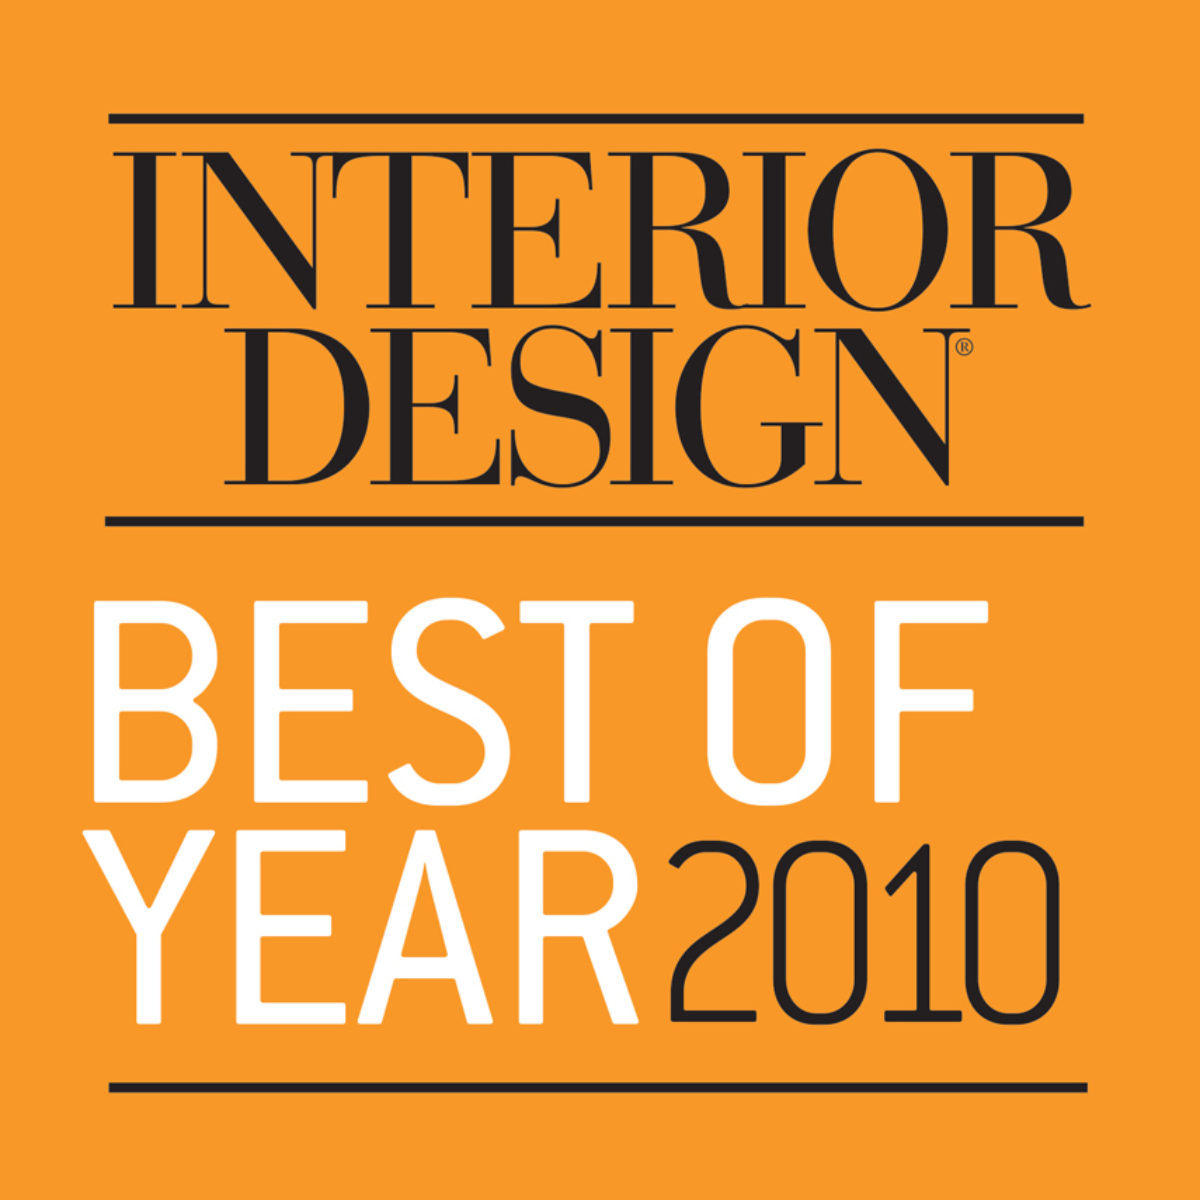 Interior Design Best of Year 2010 logo